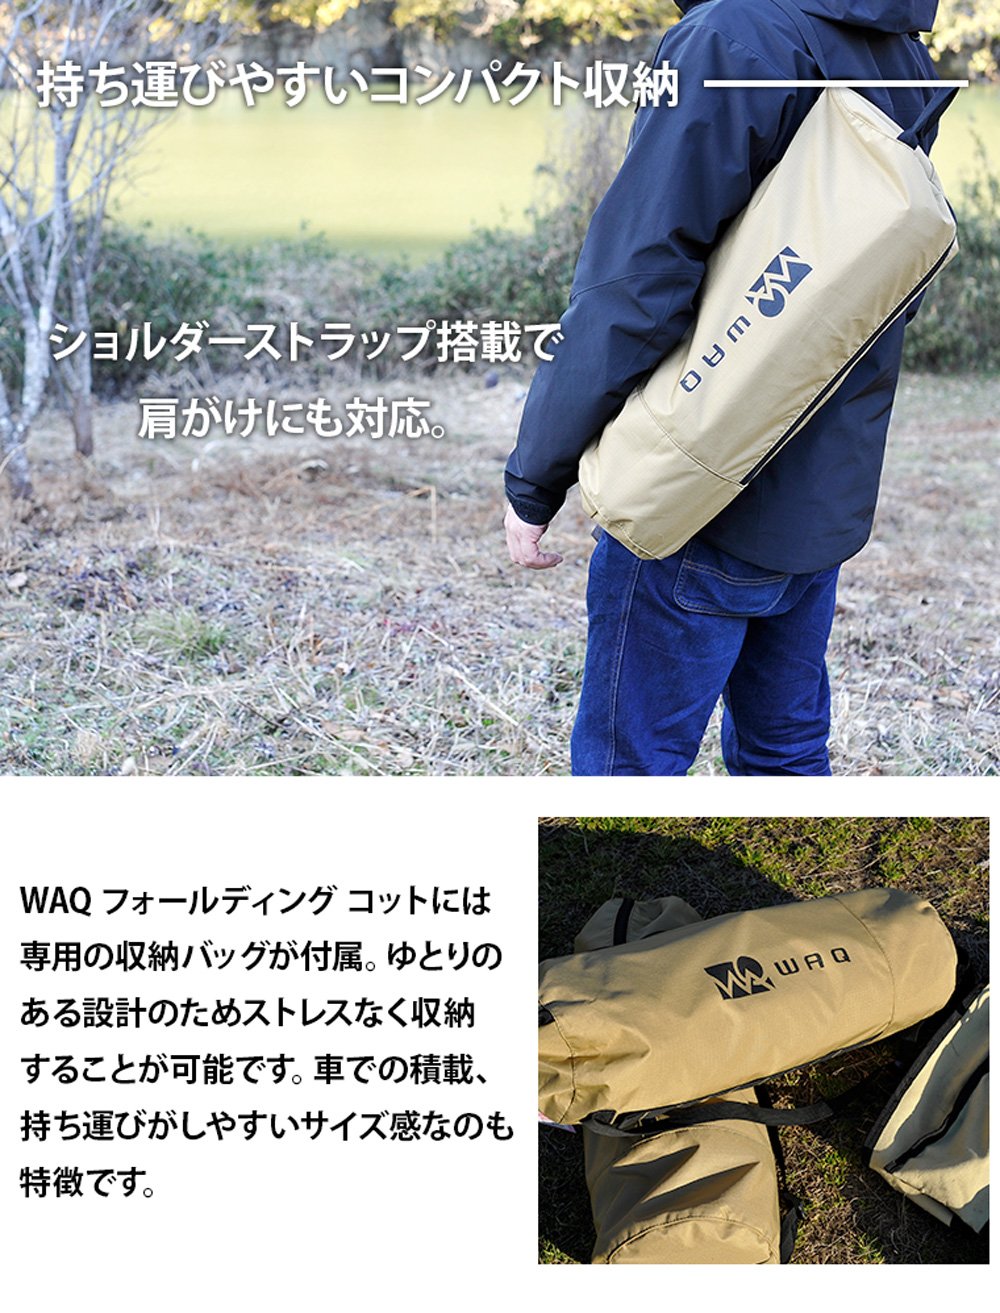 【WAQ RELAXING CAMP MAT購入者限定2,000円オフ】WAQ 2WAY フォールディングコット